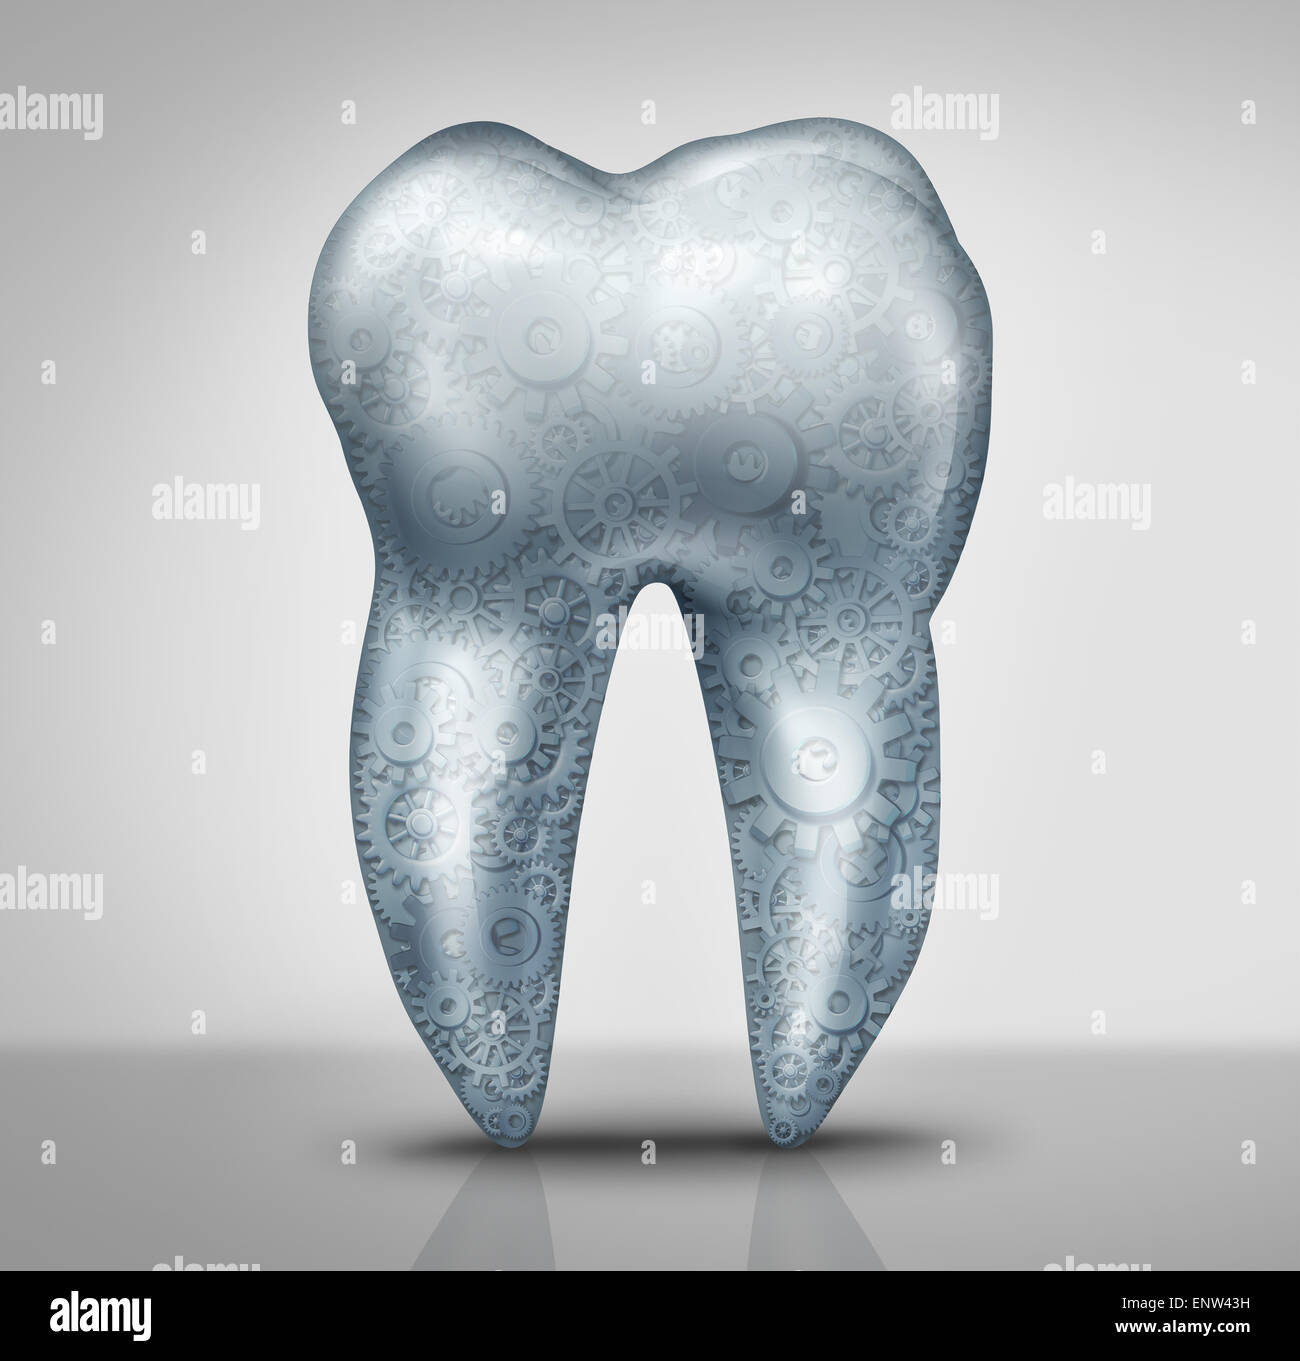 La technologie dentaire concept comme une molaire avec engrenages et roues intérieur cog comme un symbole d'art dentaire outils médicaux pour l'hygiène orale et avances pour les soins de santé. Banque D'Images